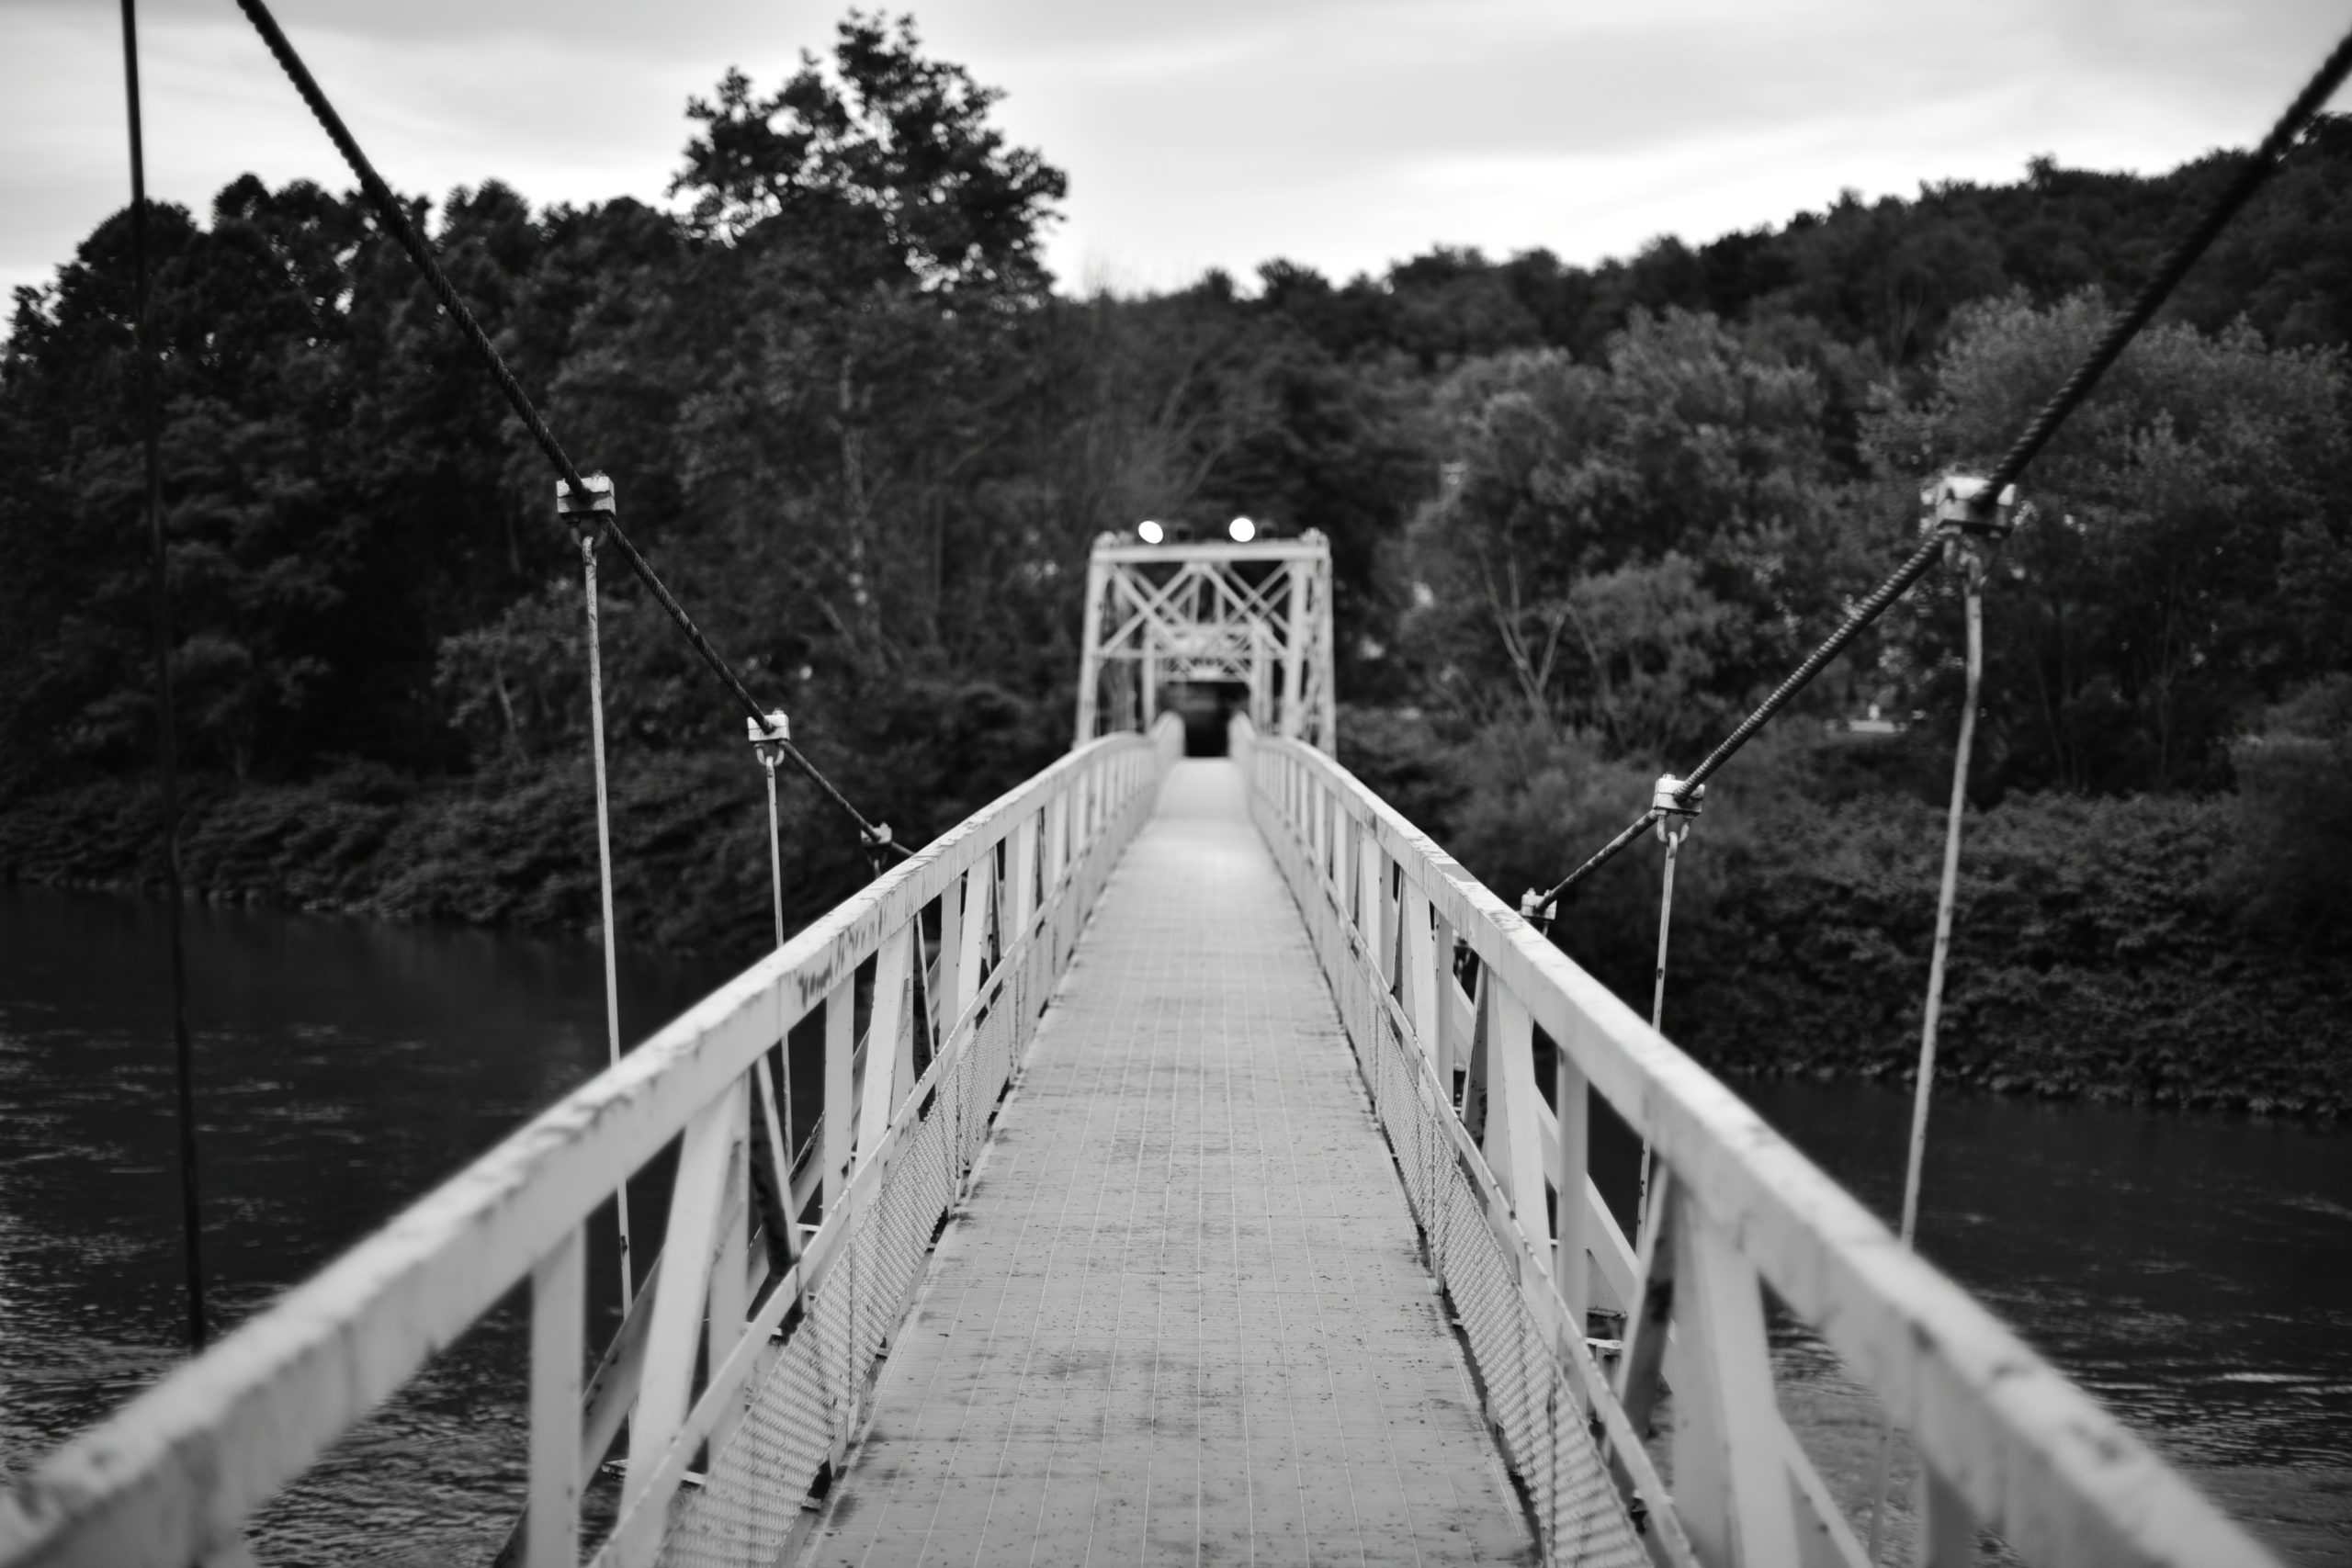 The Leechburg Walking Bridge